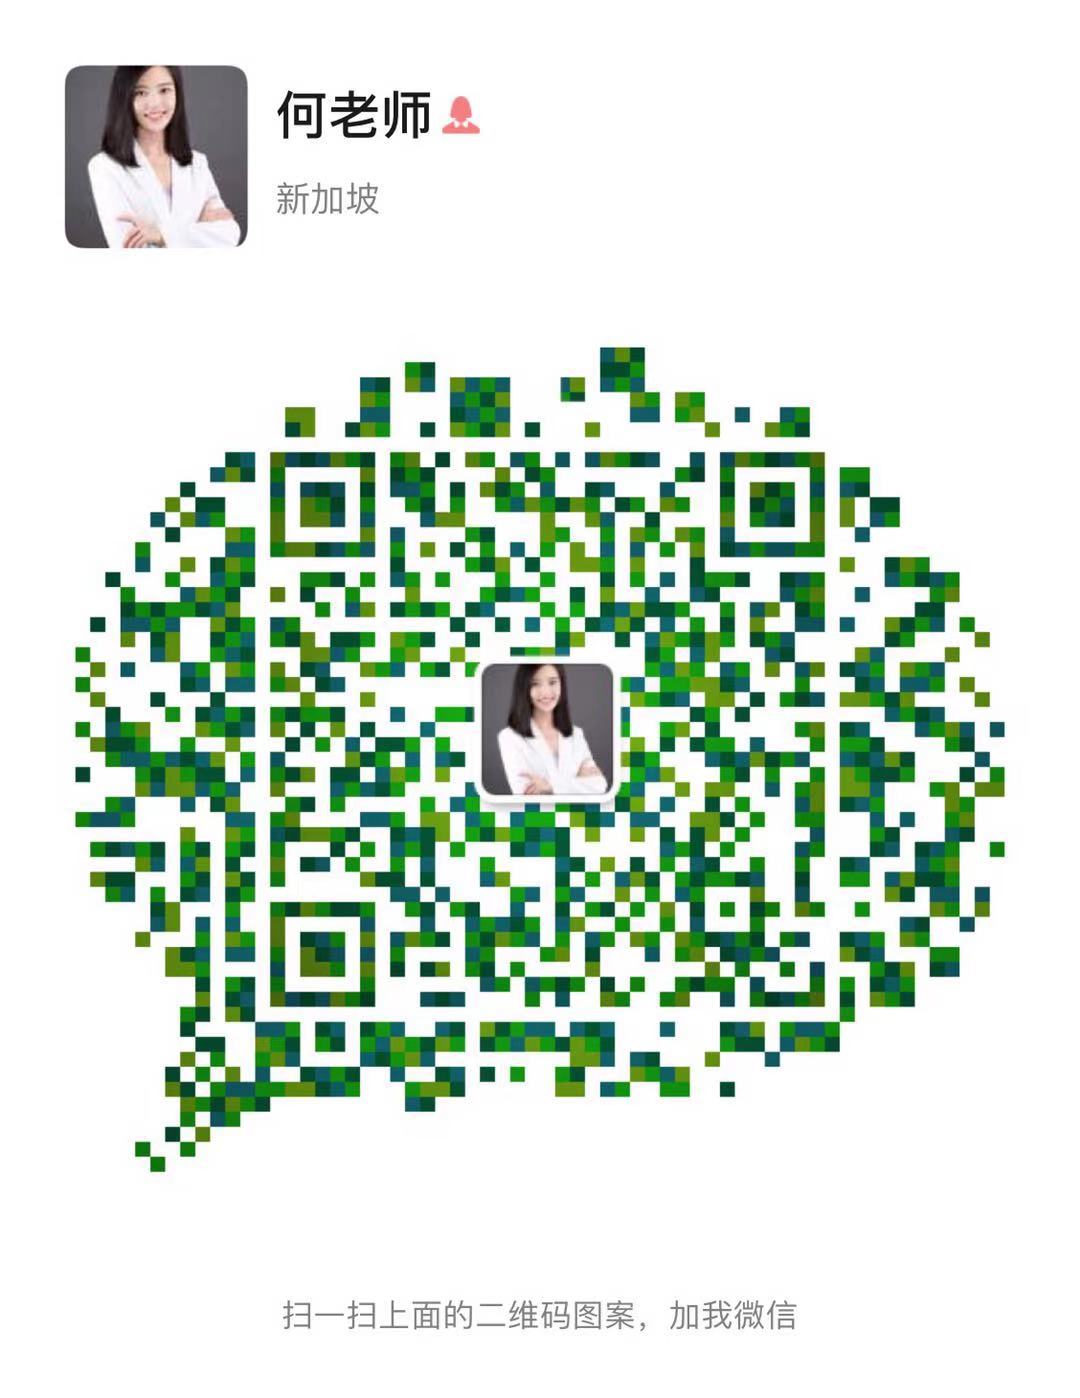 WeChat Image_20201125215608.jpg